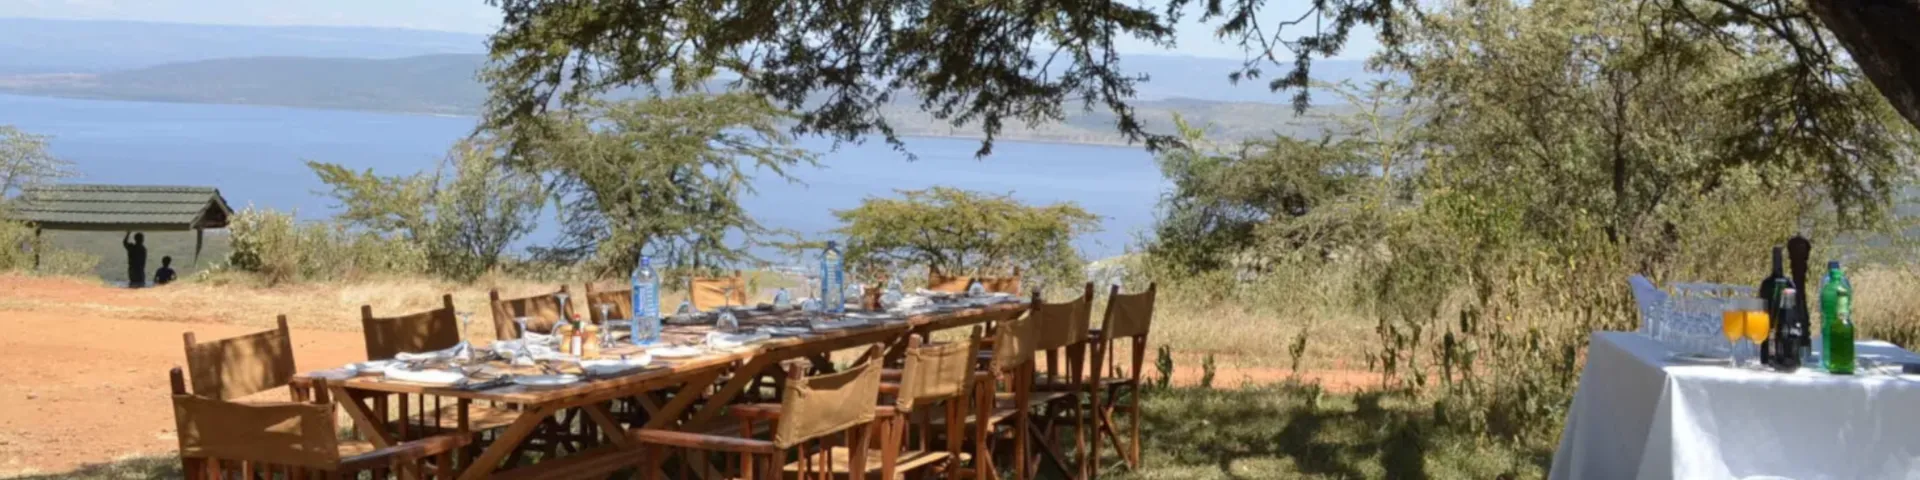 Mbweha Camp - Lake Nakuru - Kenya